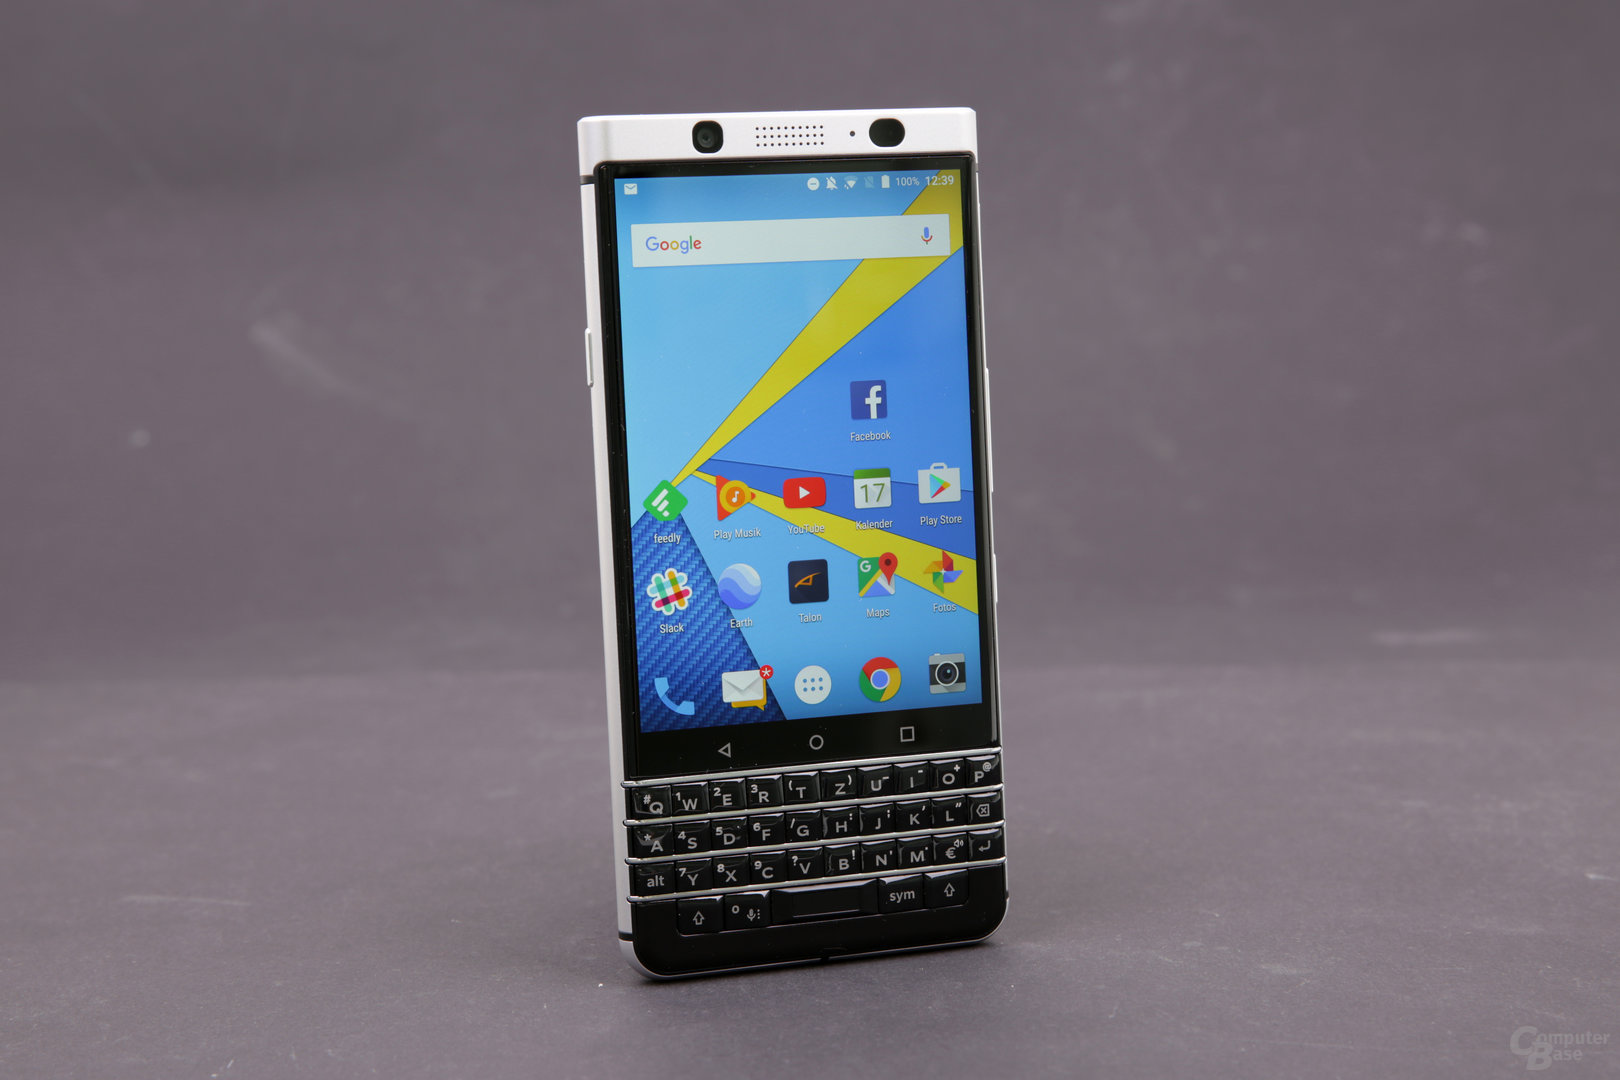 Fazit: BlackBerry baut ein sehr gutes Smartphone für seine Zielgruppe